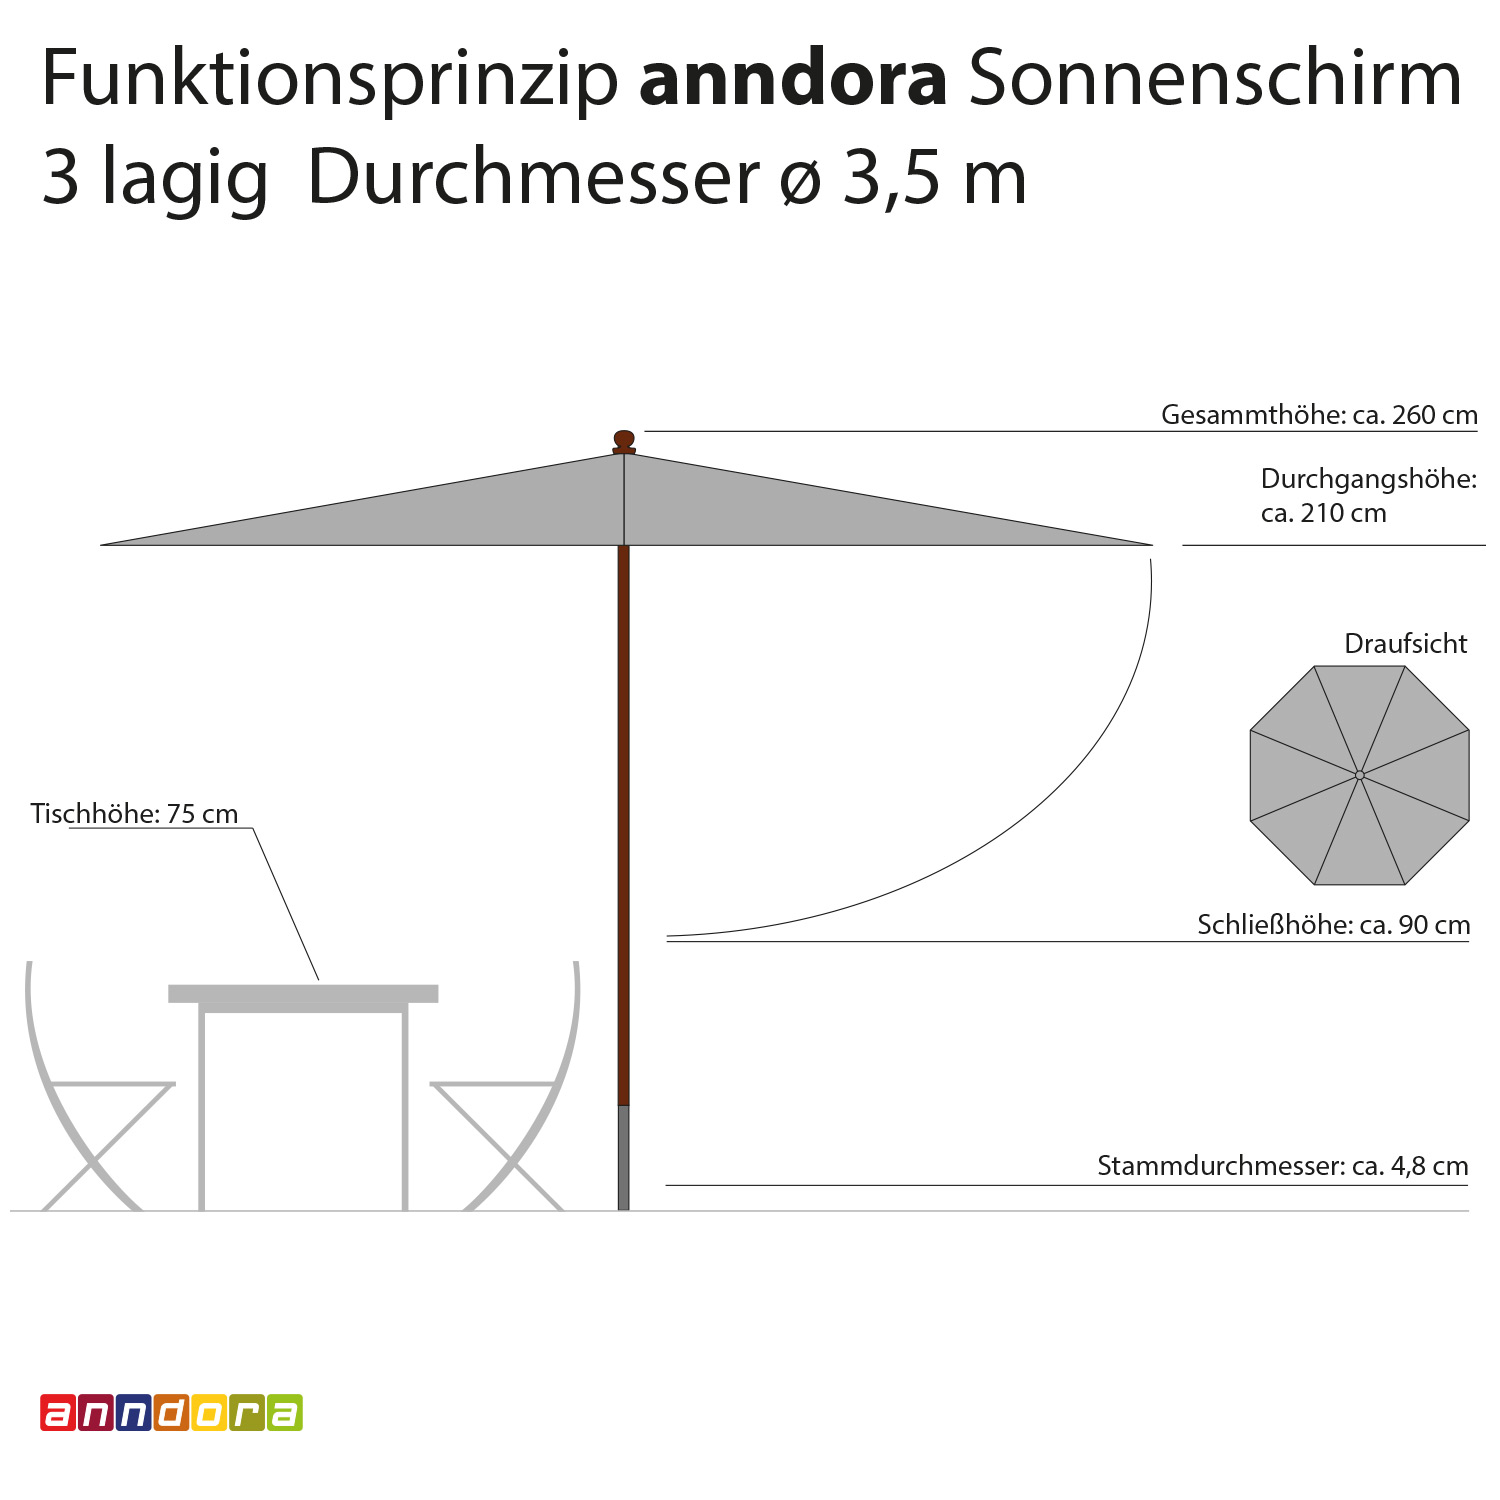 anndora Sonnenschirm 3,5m rund 3-lagig Natural UV-Schutz - 3